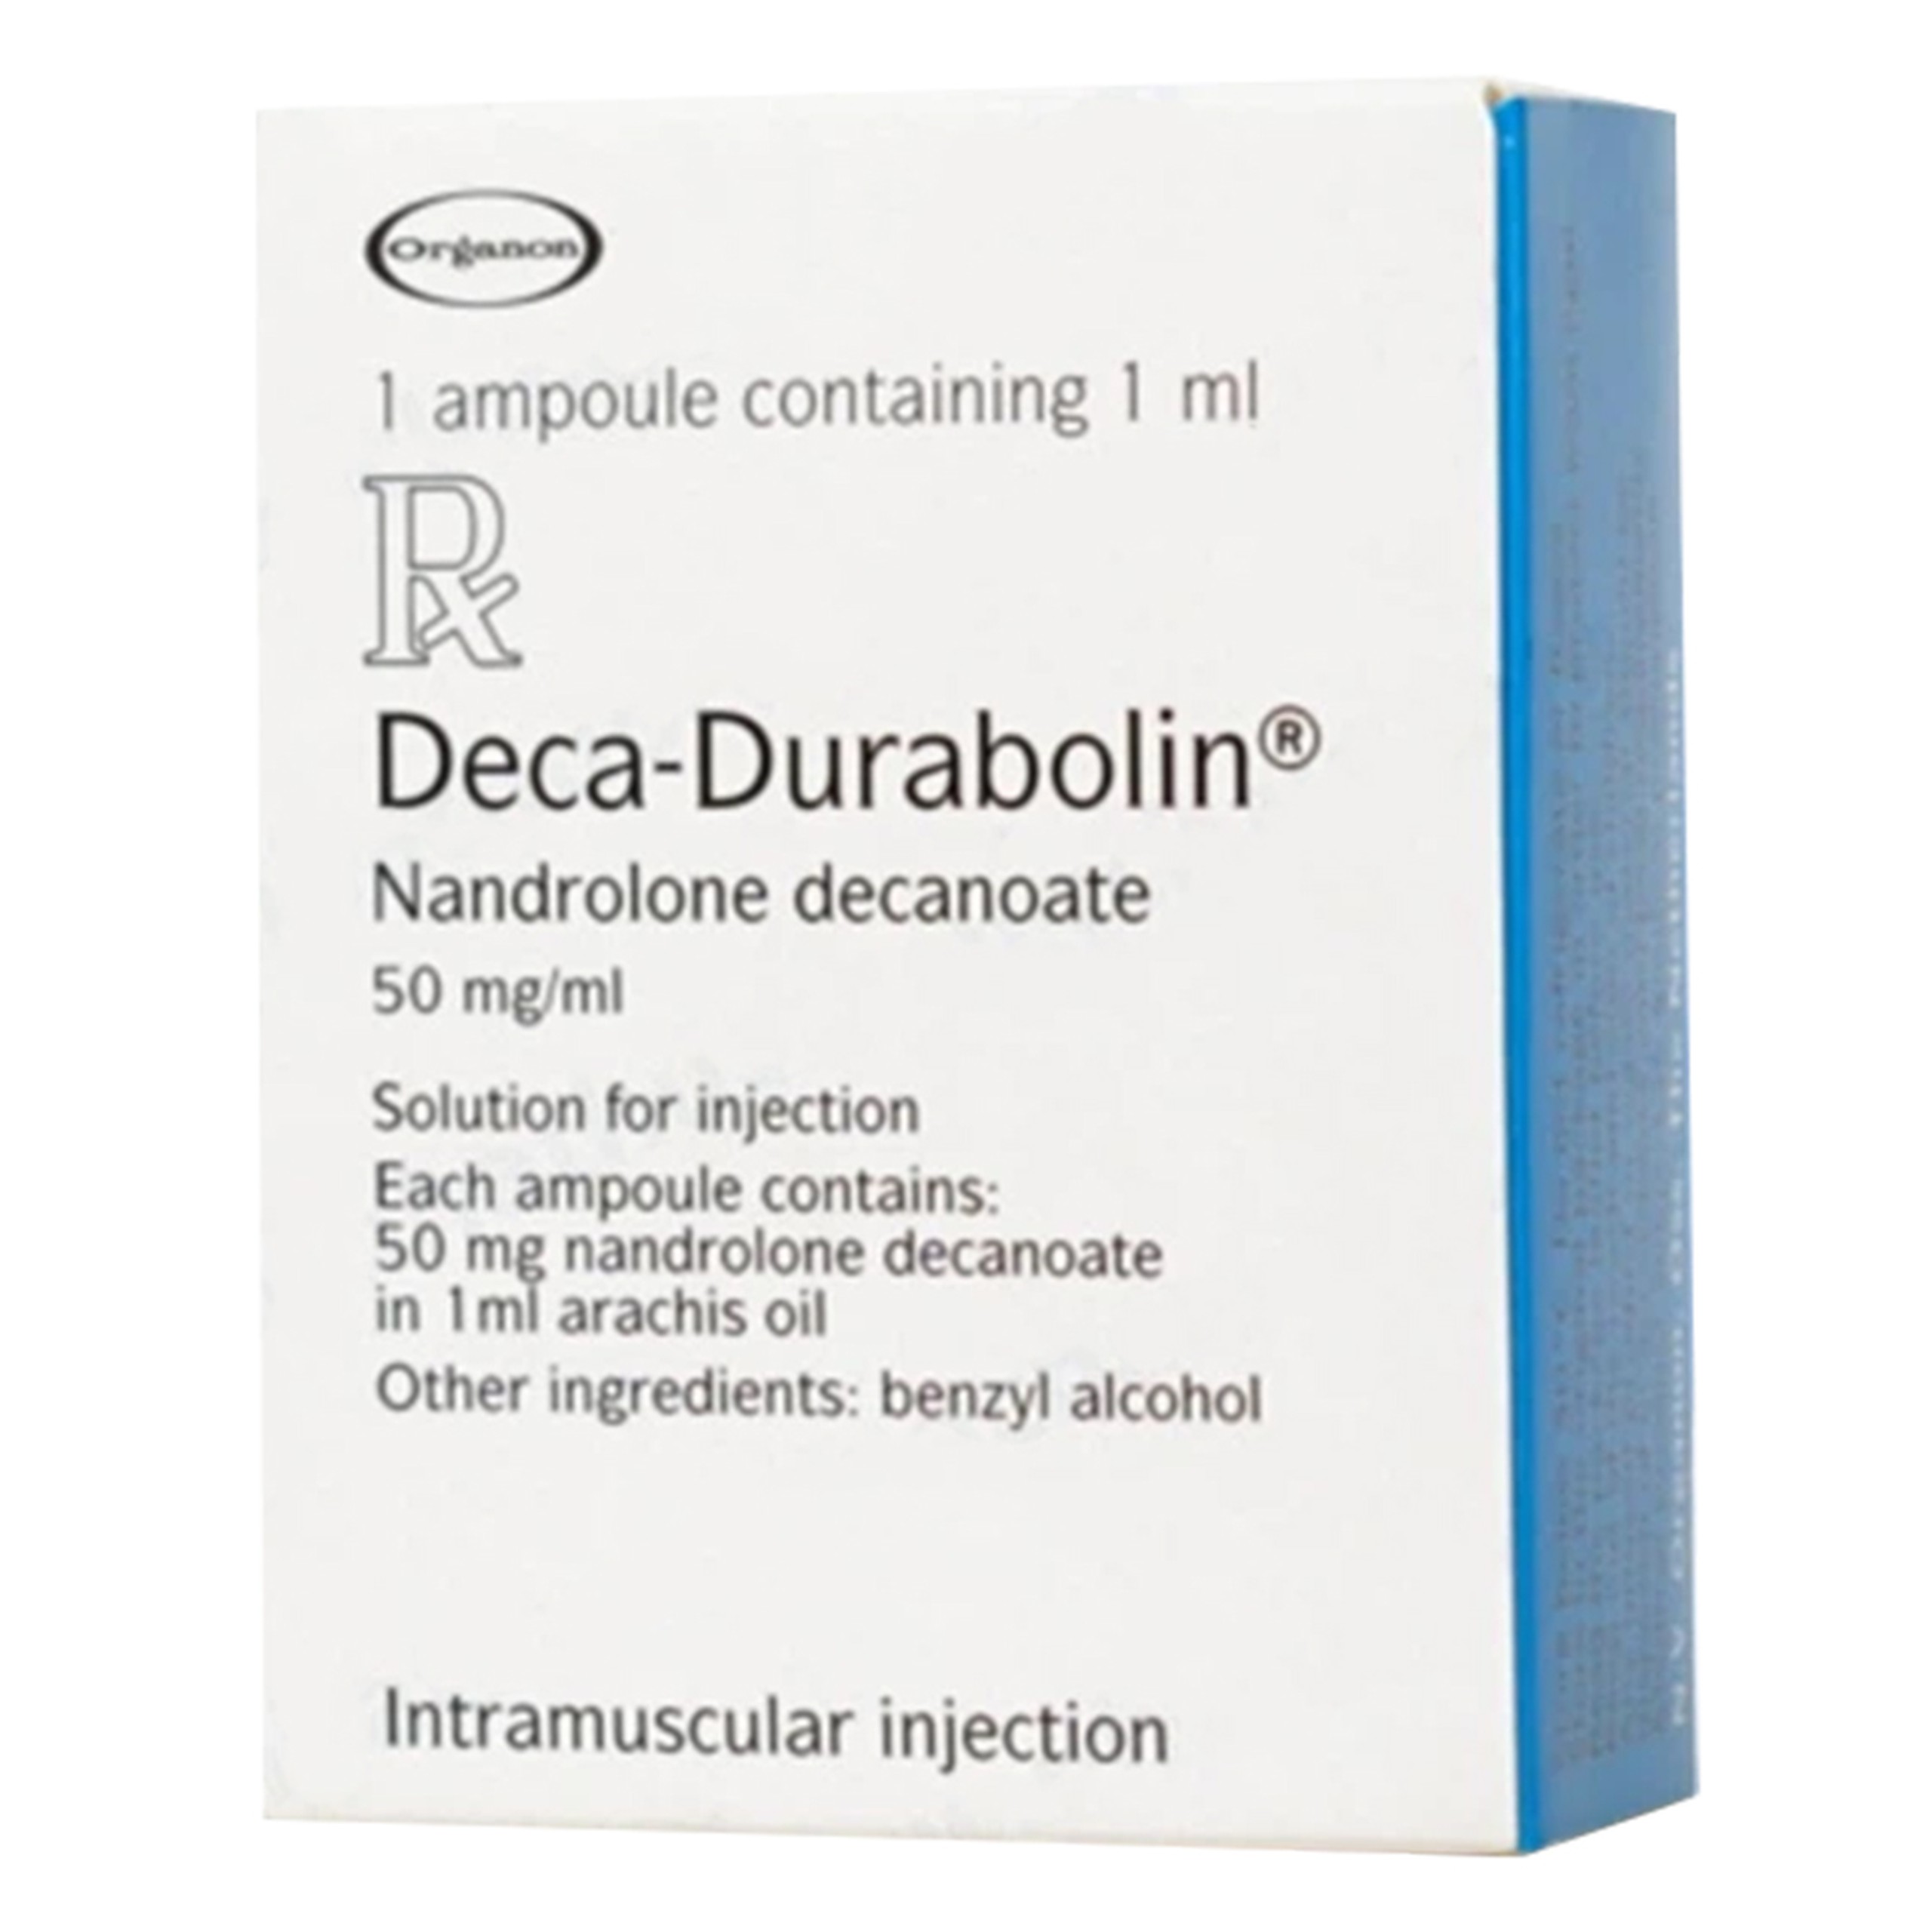 Thuốc tiêm Deca-Durabolin 50mg/ml Organon điều trị loãng xương nặng và thiếu máu (1 ống)